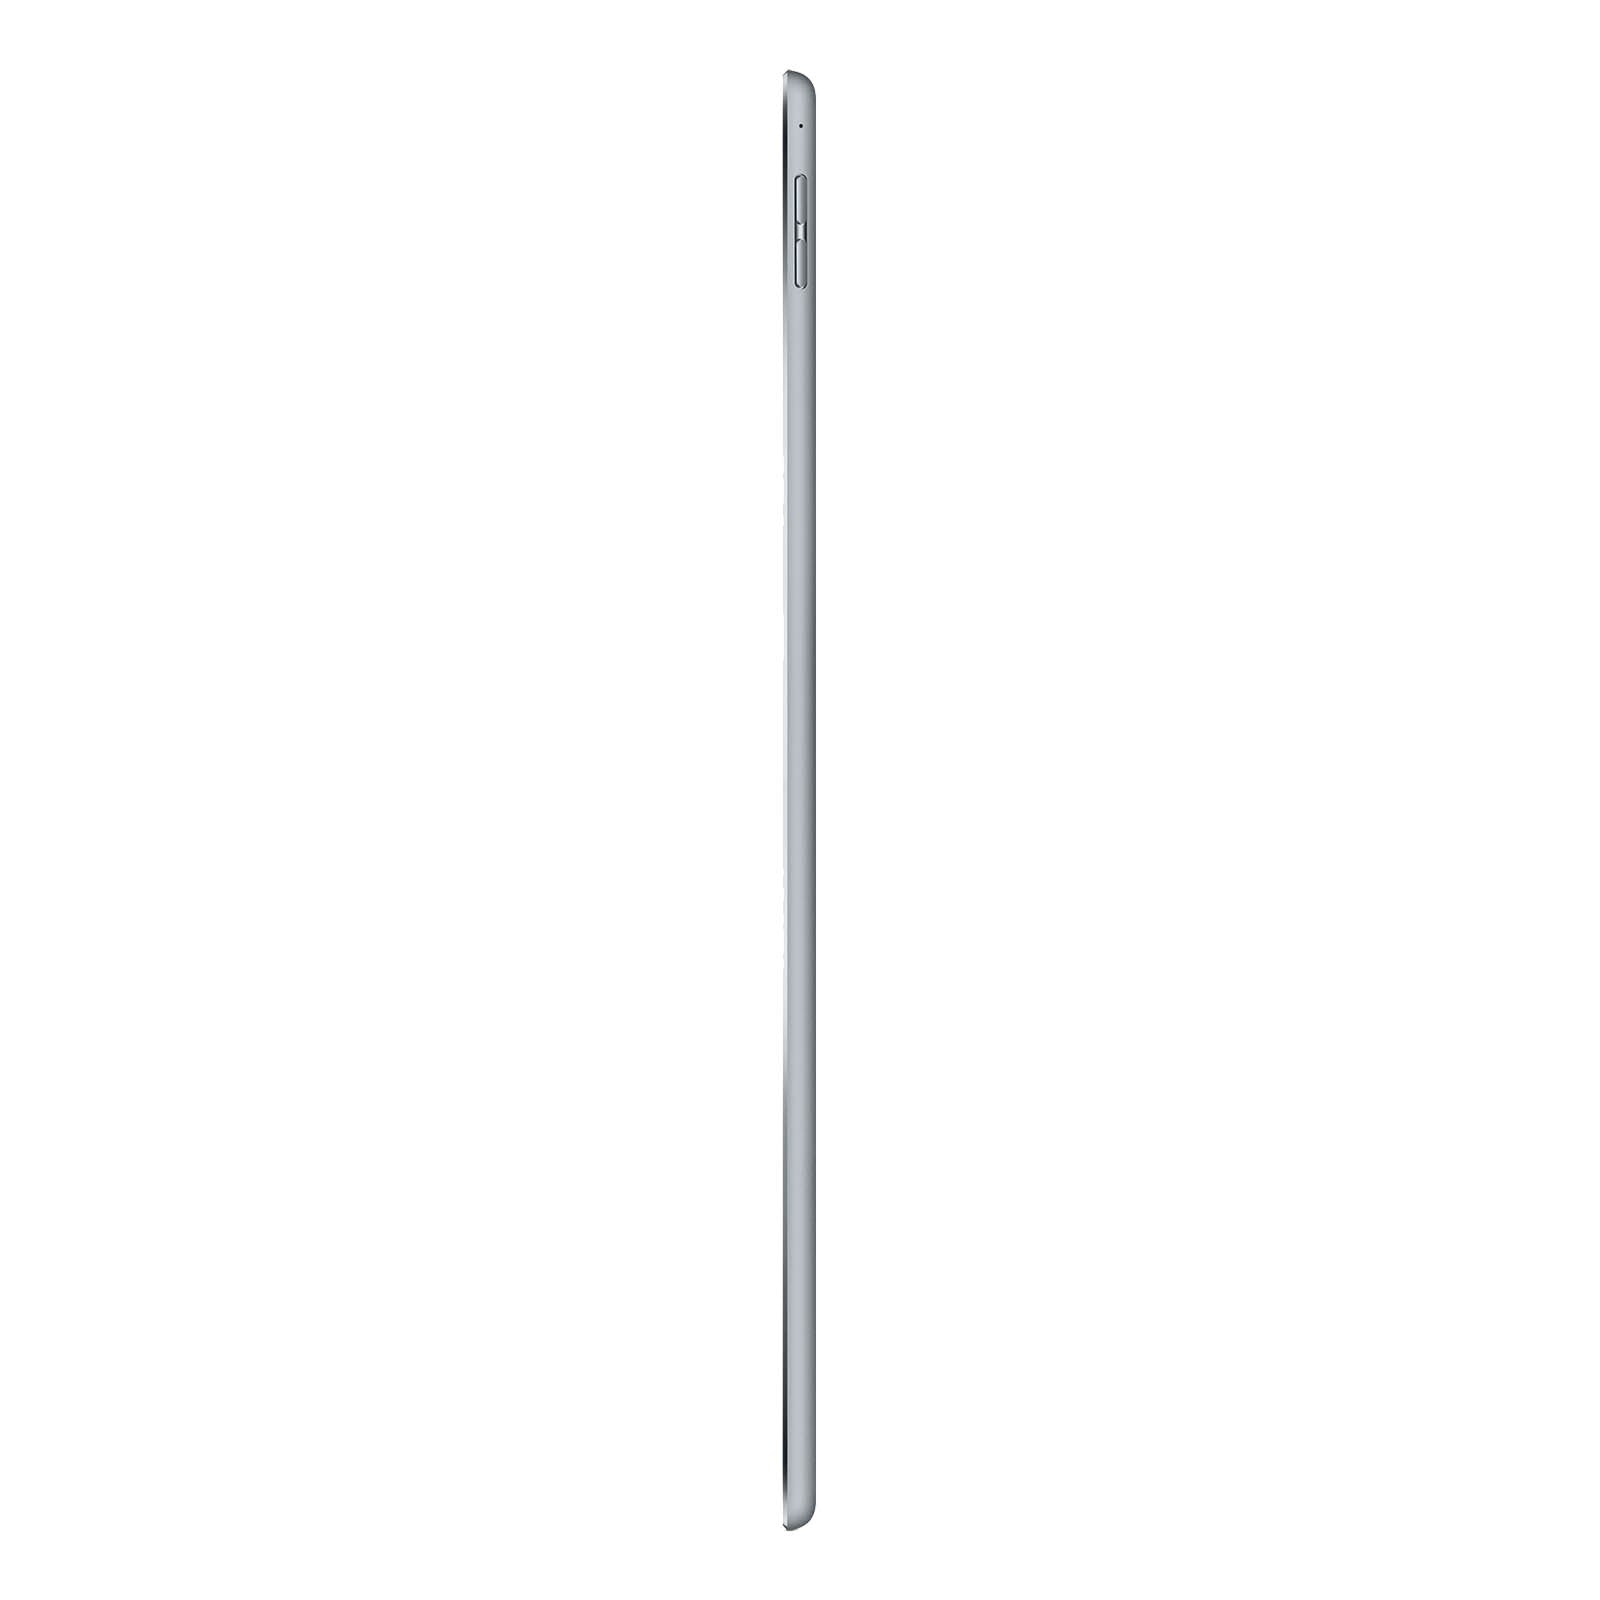 iPad Pro 12.9" 3rd Gen 256GB Grigio Siderale Buono Sbloccato